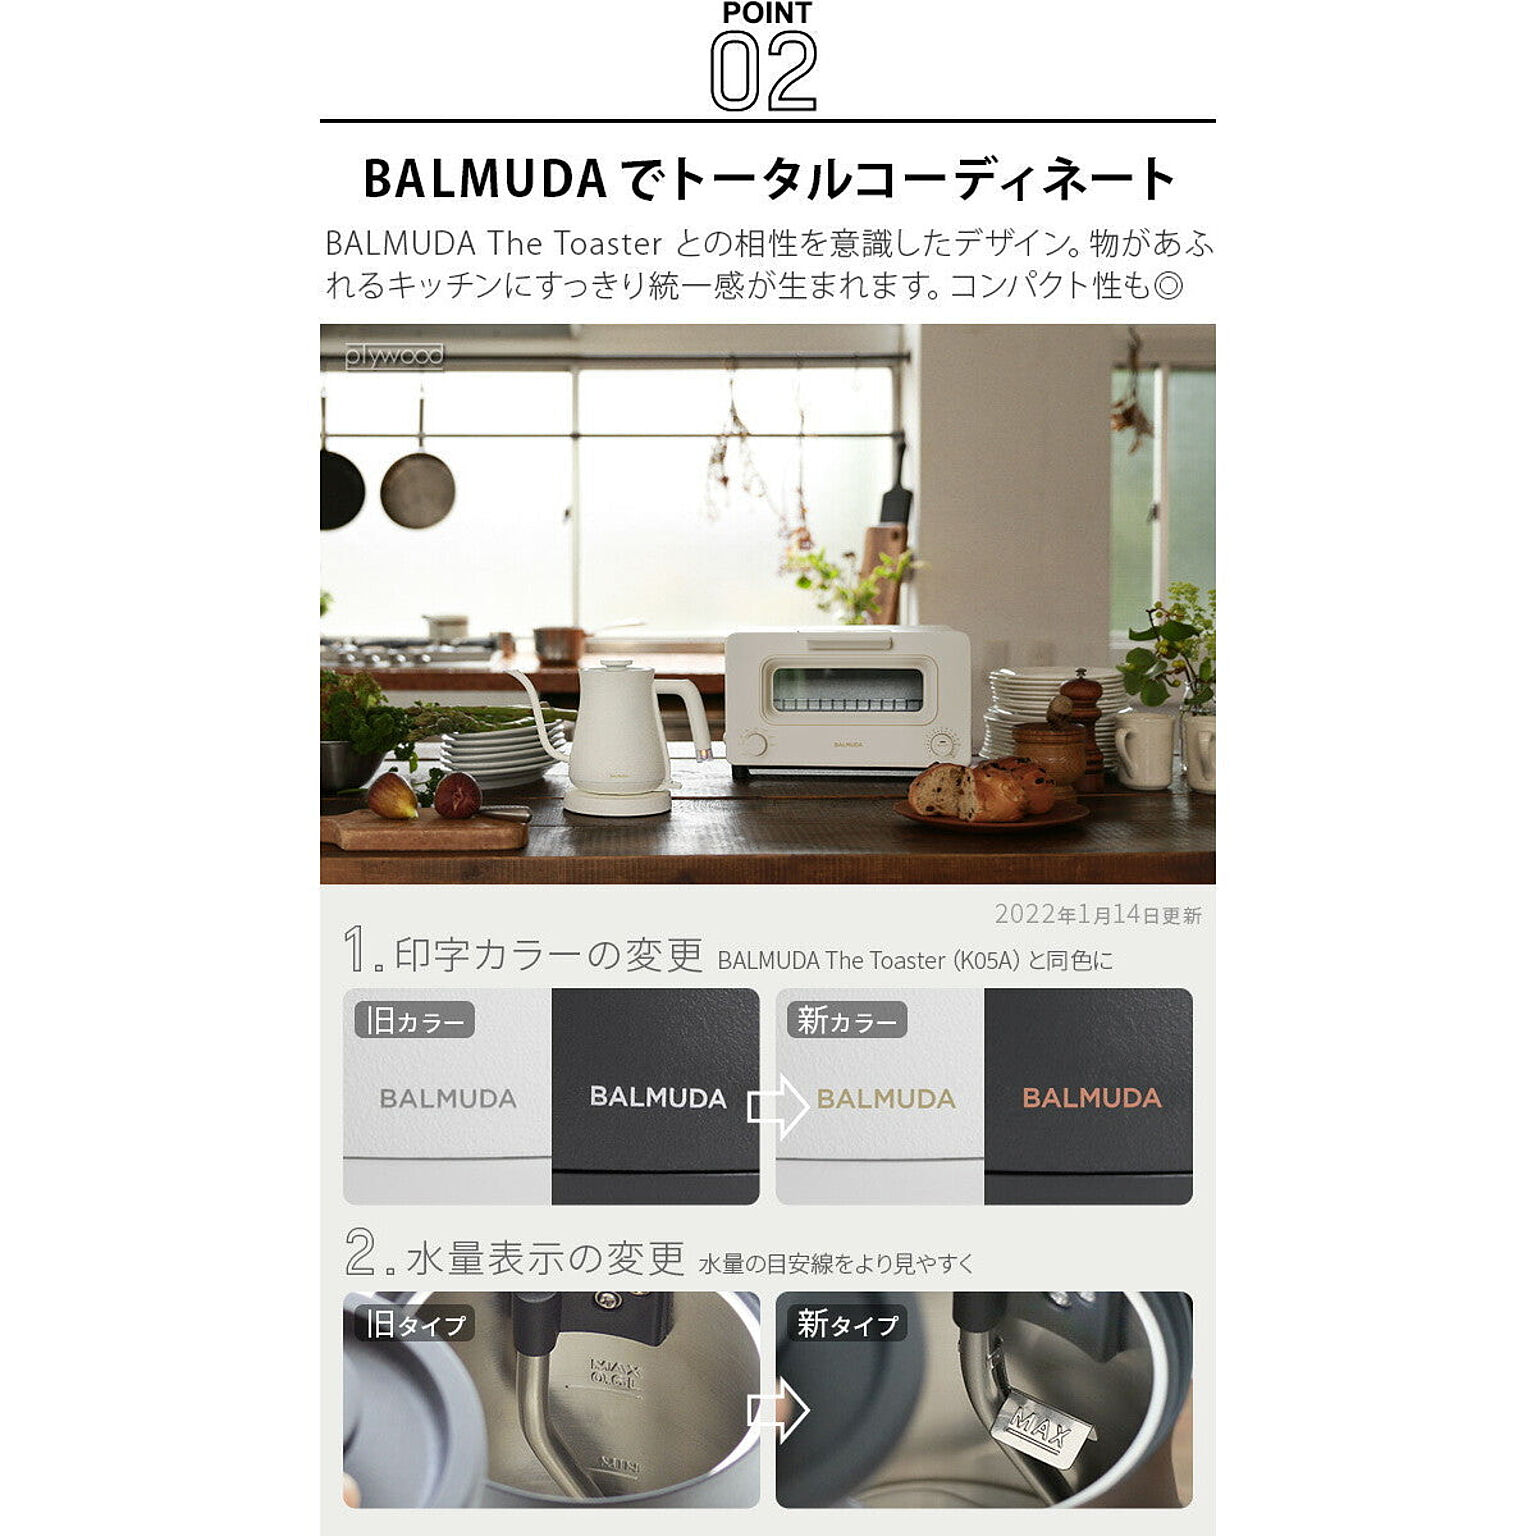 BALMUDA The Pot K07A ブラック 通販 家具とインテリアの通販【RoomClipショッピング】